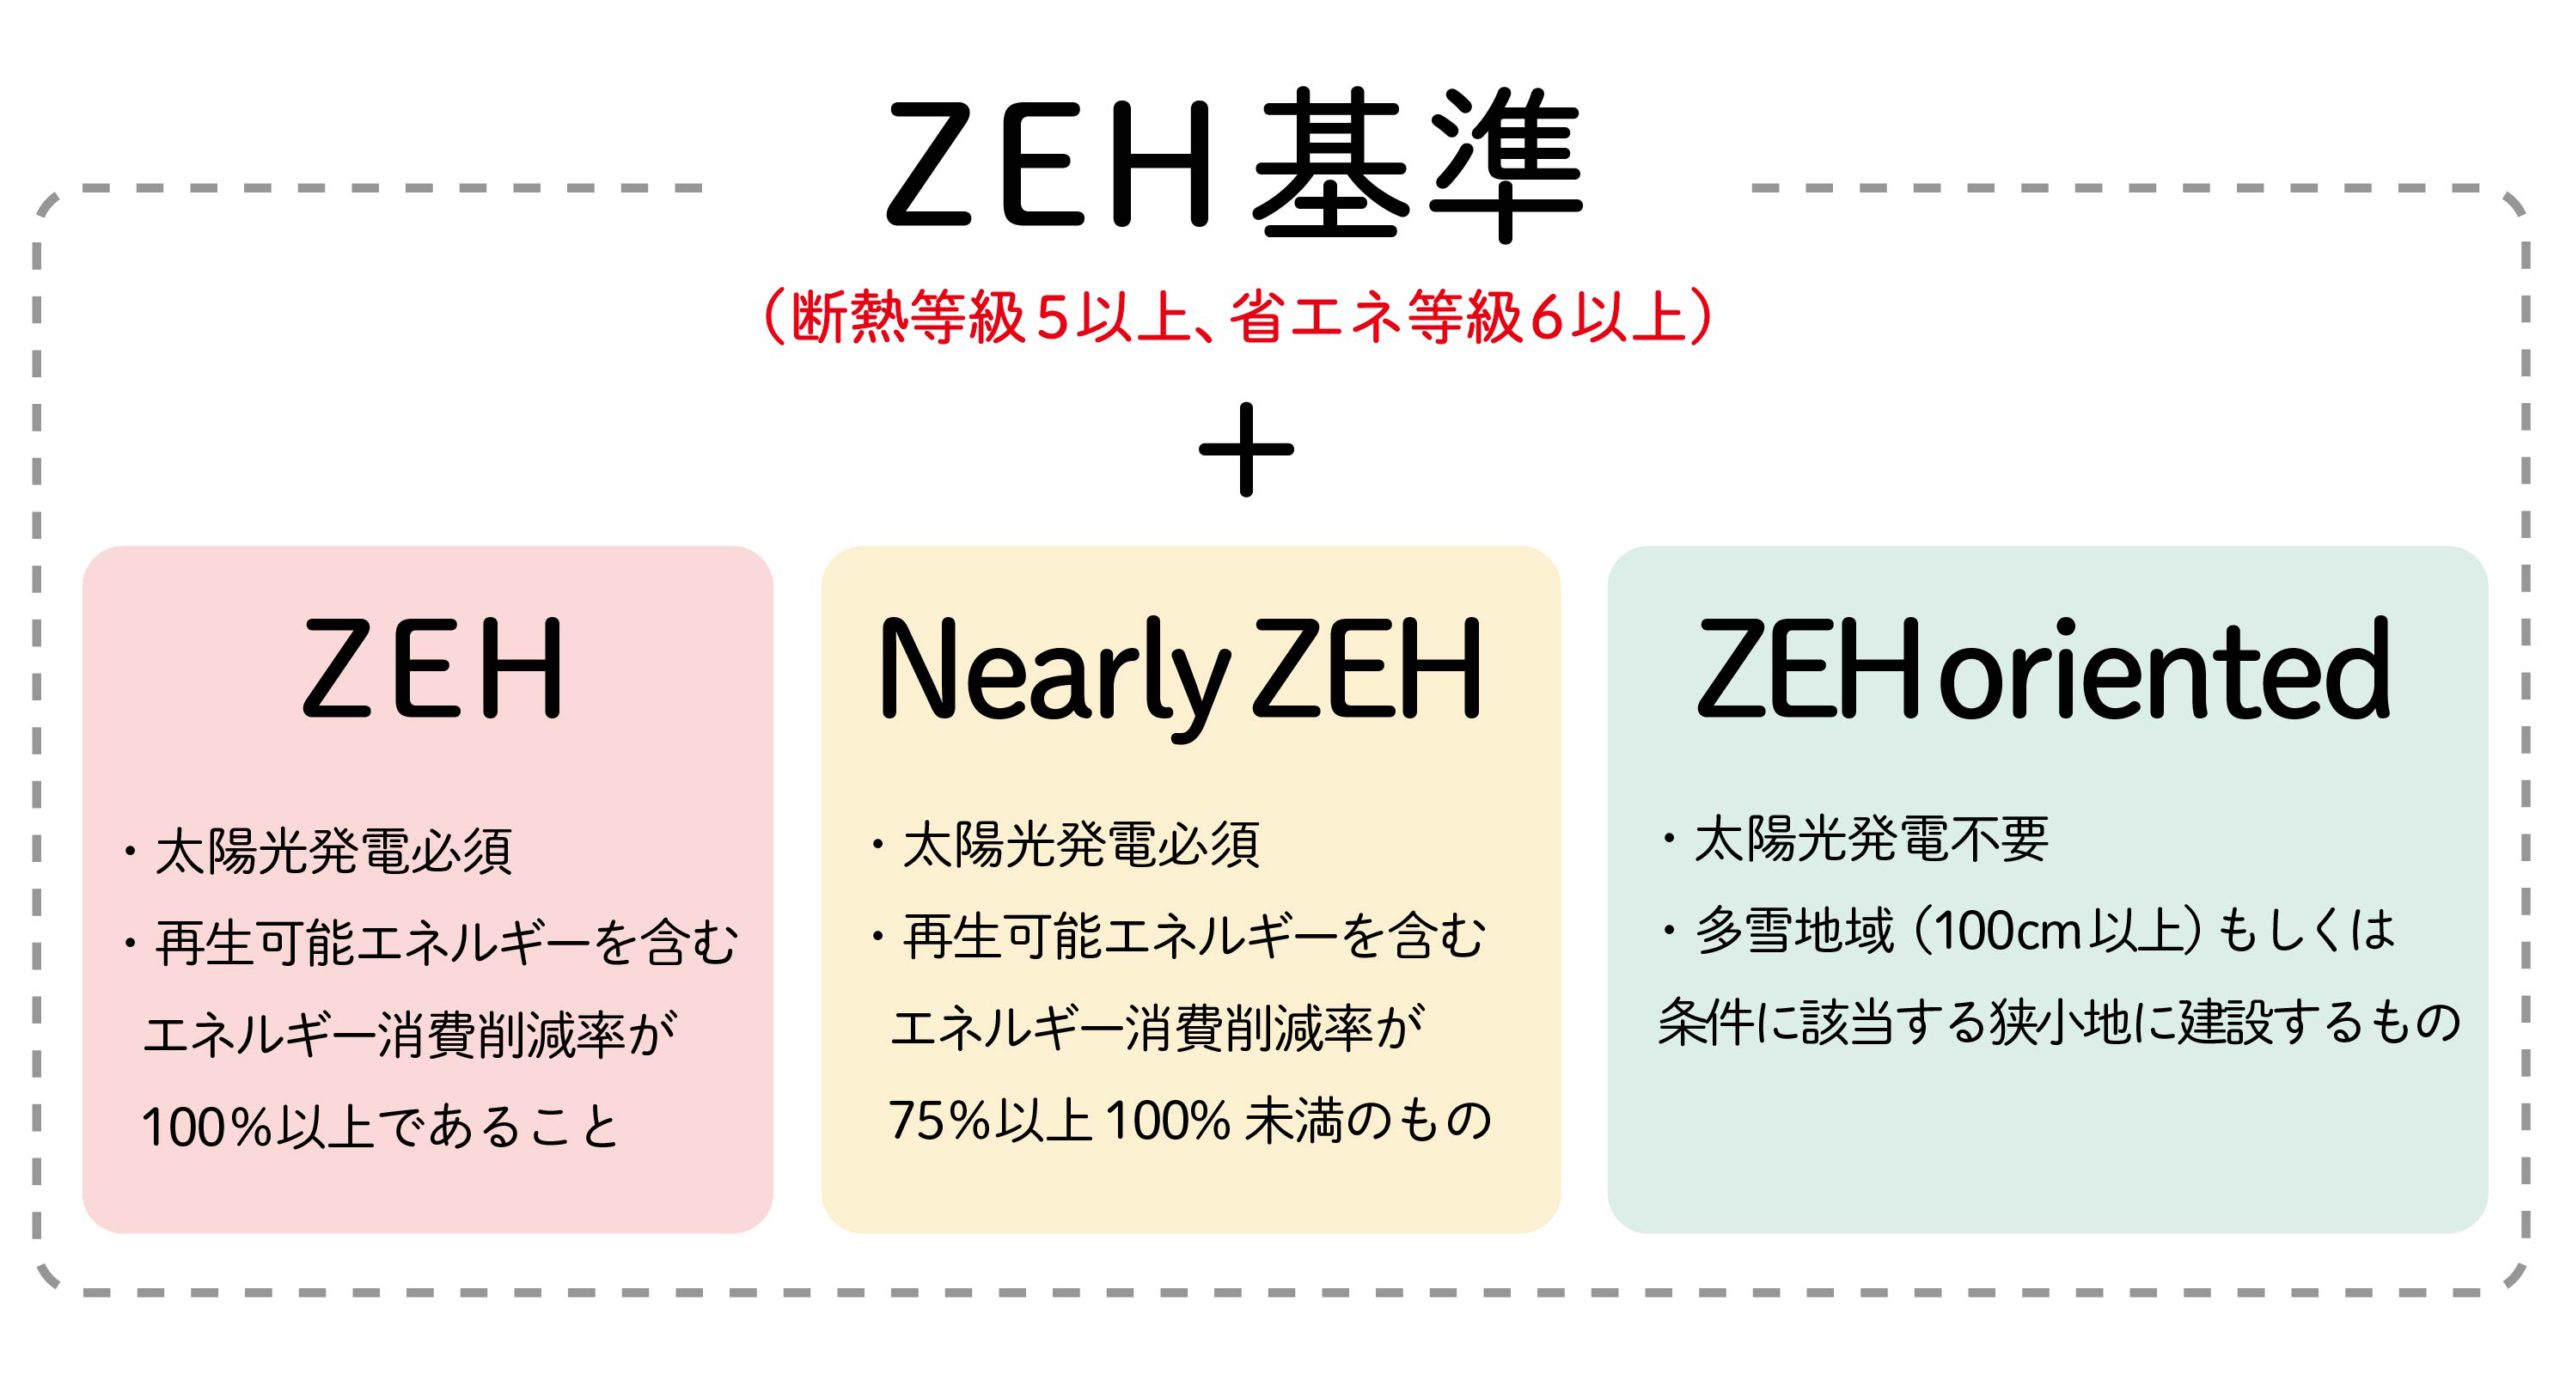 ZEH基準と種類